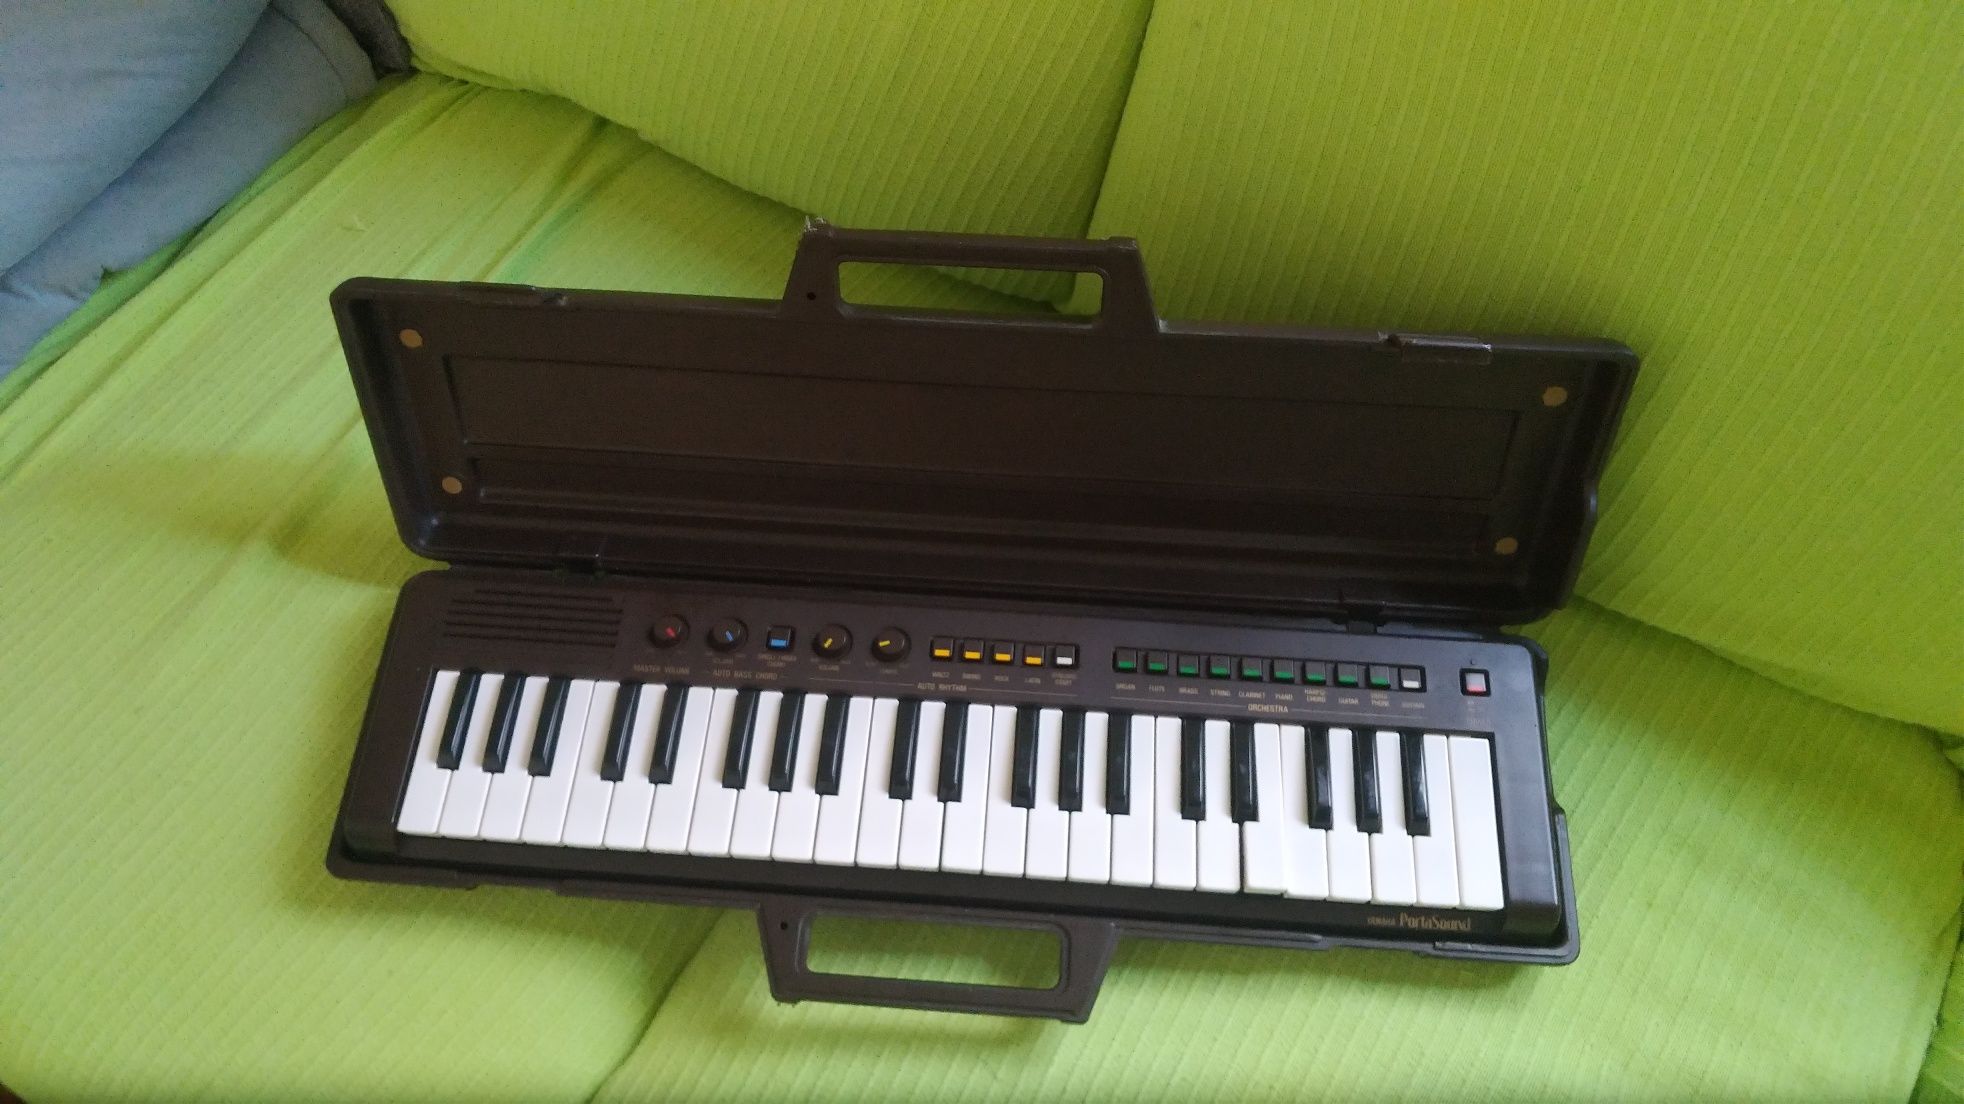 Yamaha PS-3 PortaSond piano sintetizador teclado órgão musical